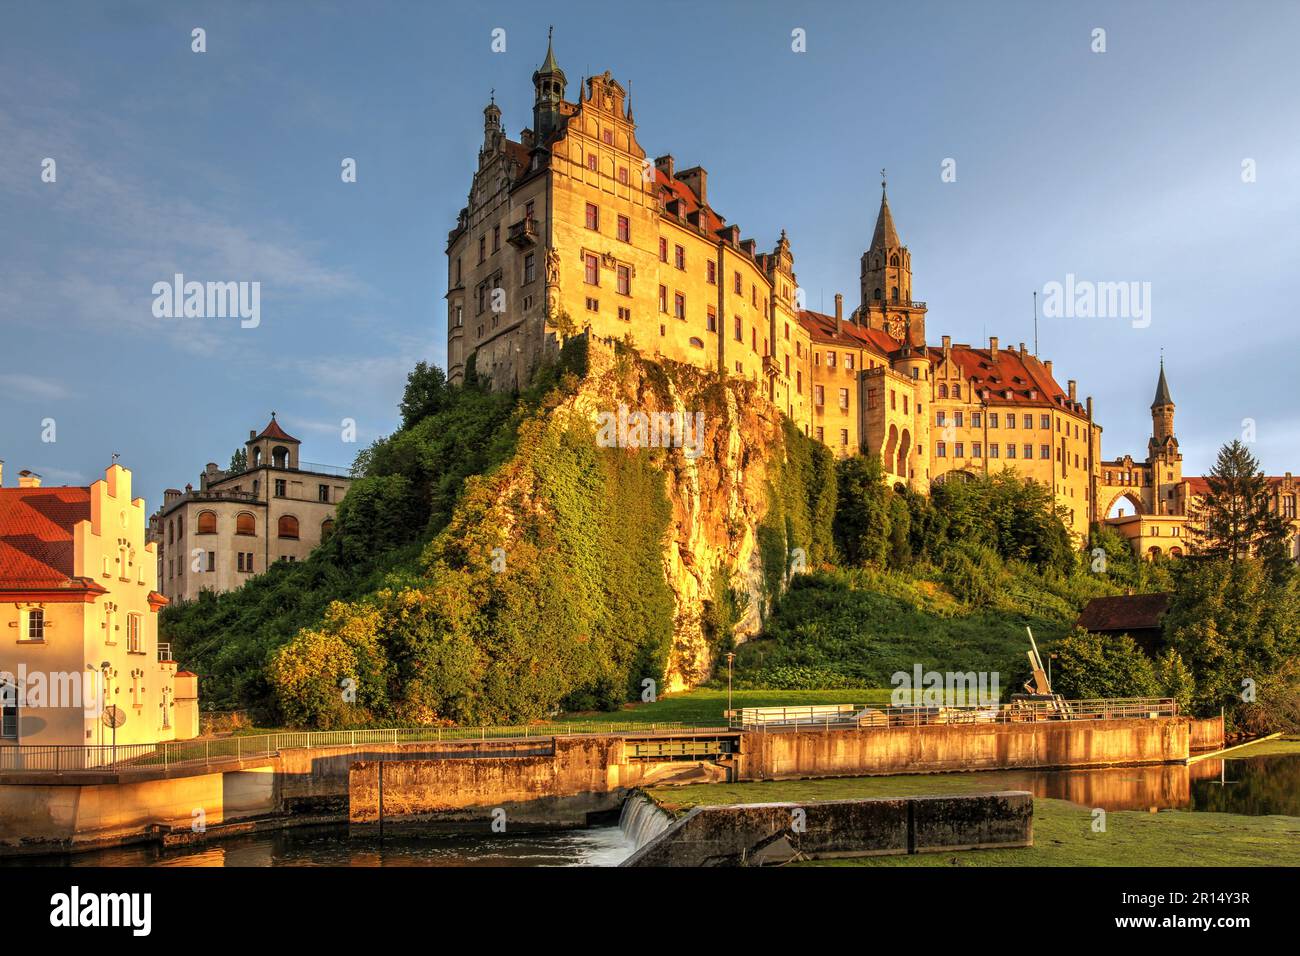 Luce d'oro sullo Schloss Sigmaringen (Castello), una storica roccaforte Hohenzollern lungo il Danubio nella regione dell'Albo Svevo di Baden-Württemberg. Foto Stock